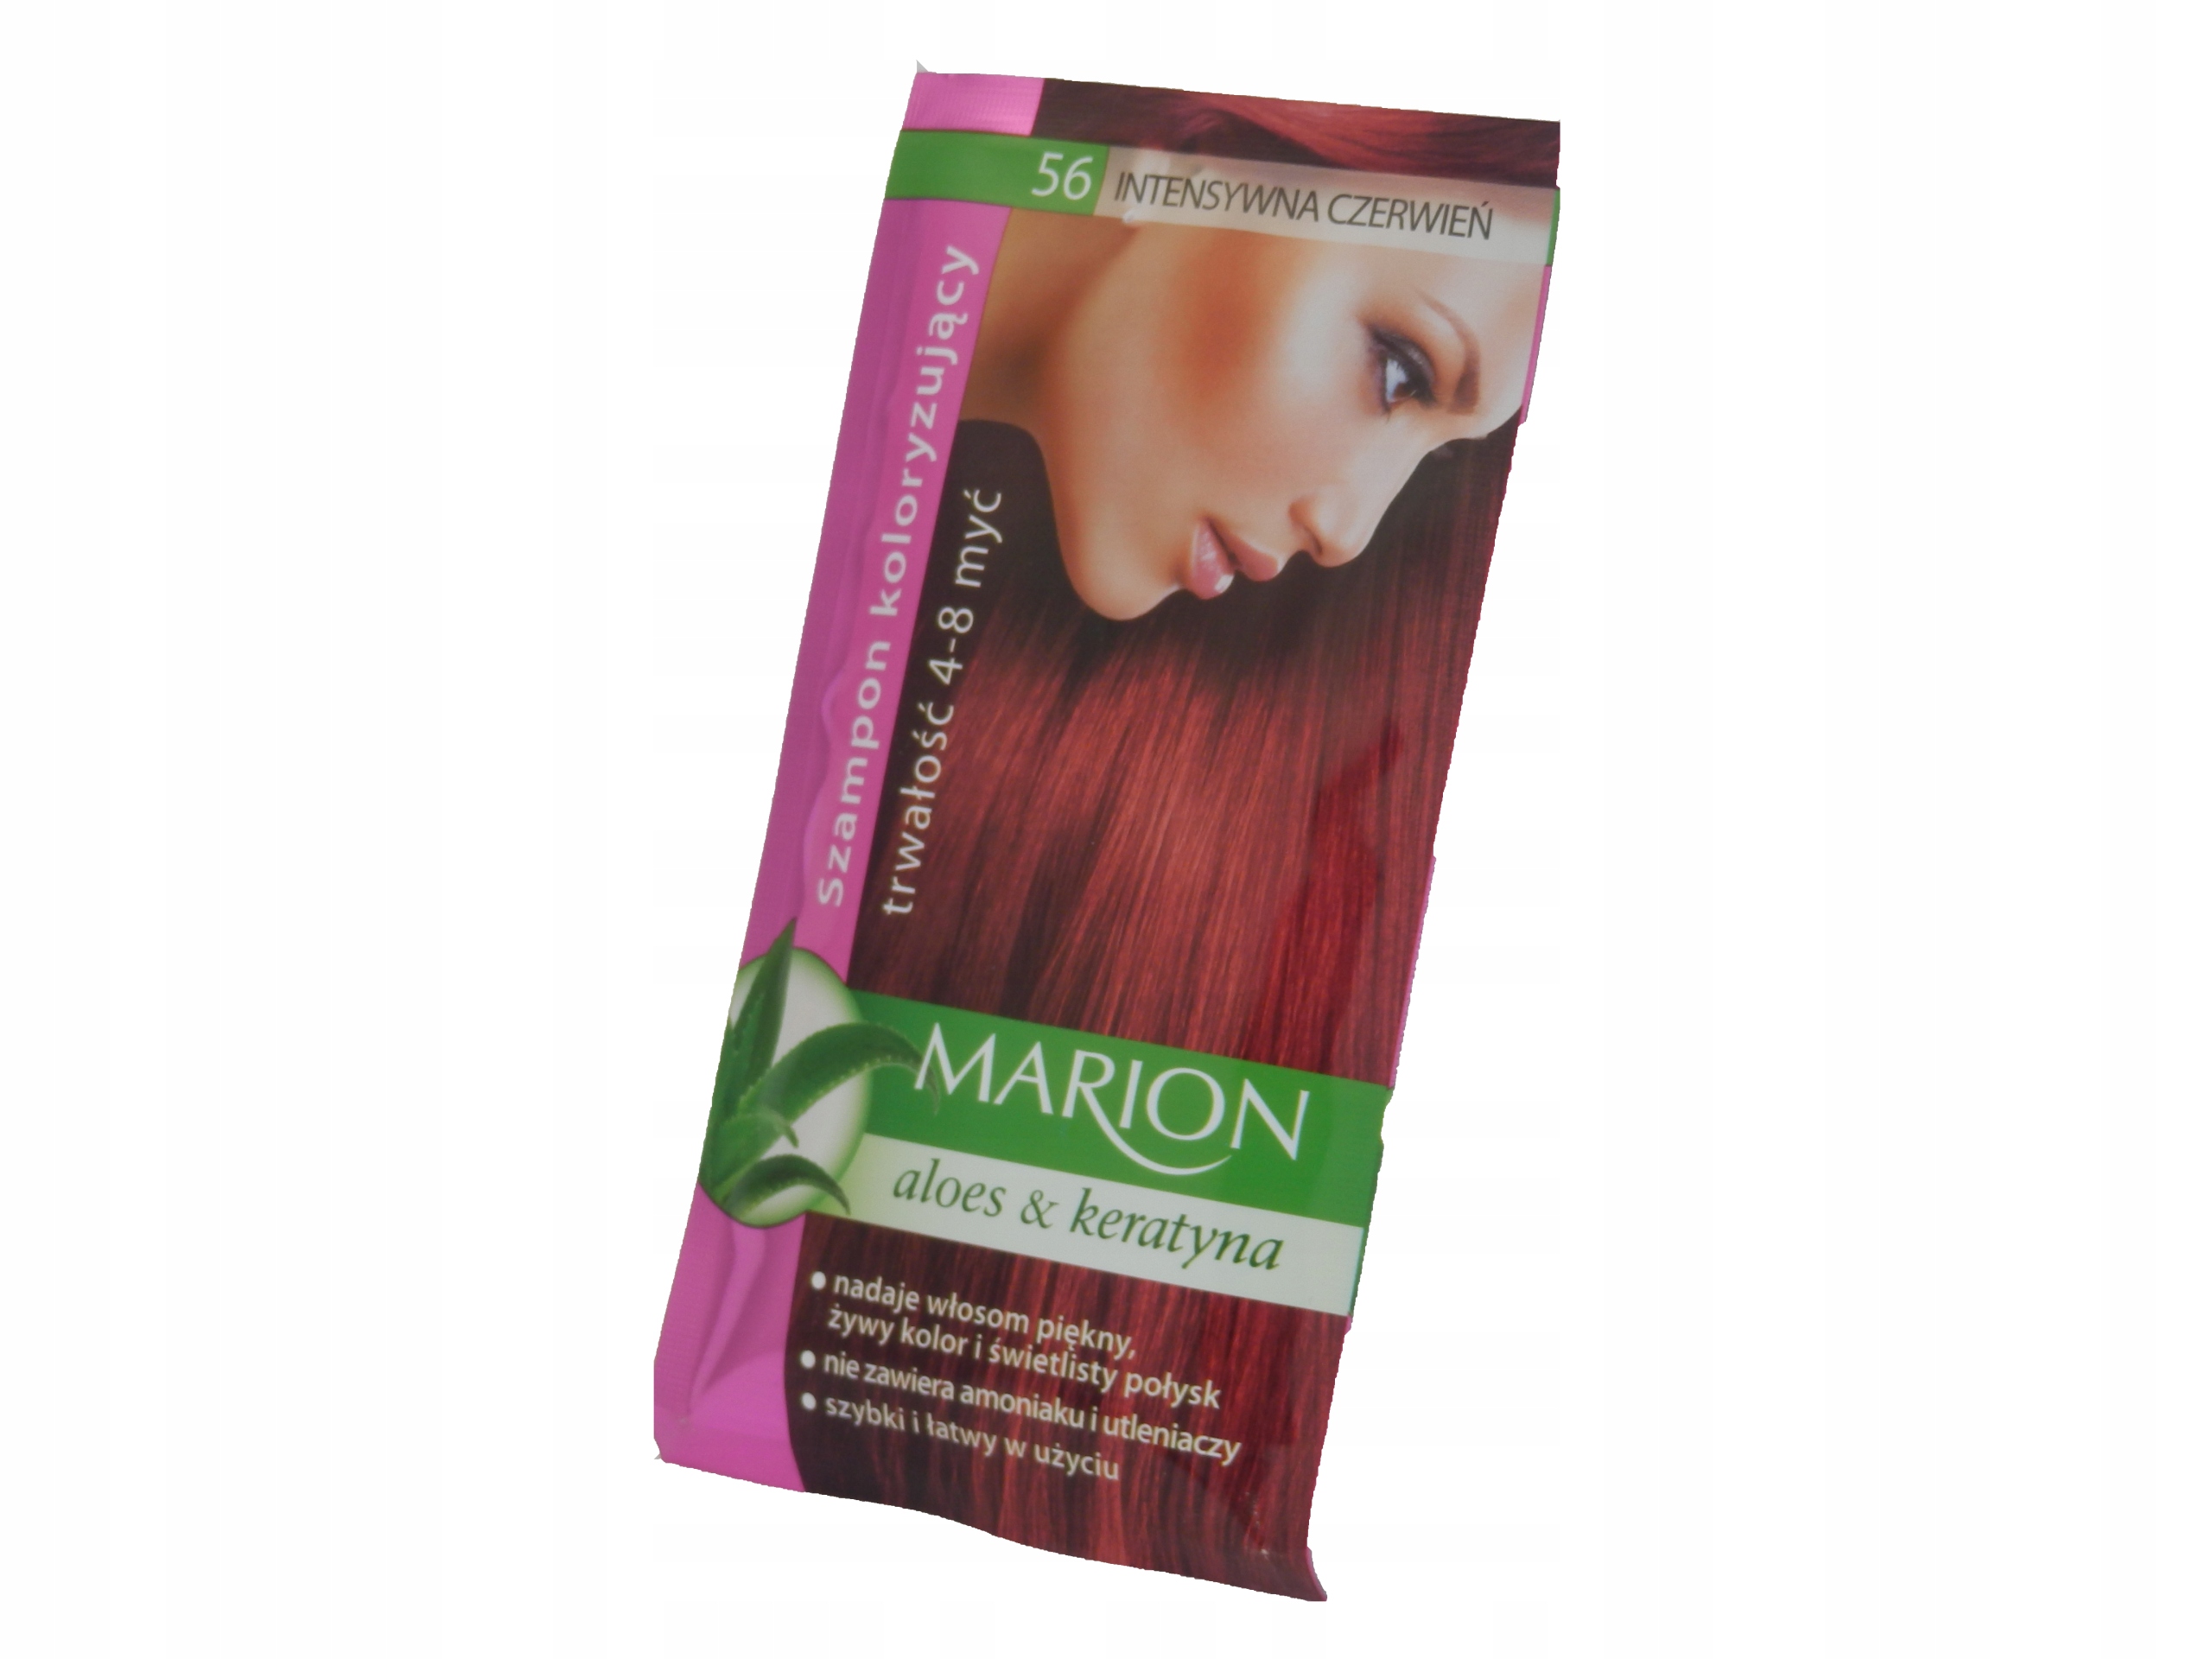 koloryzujący szampon do włosów marion